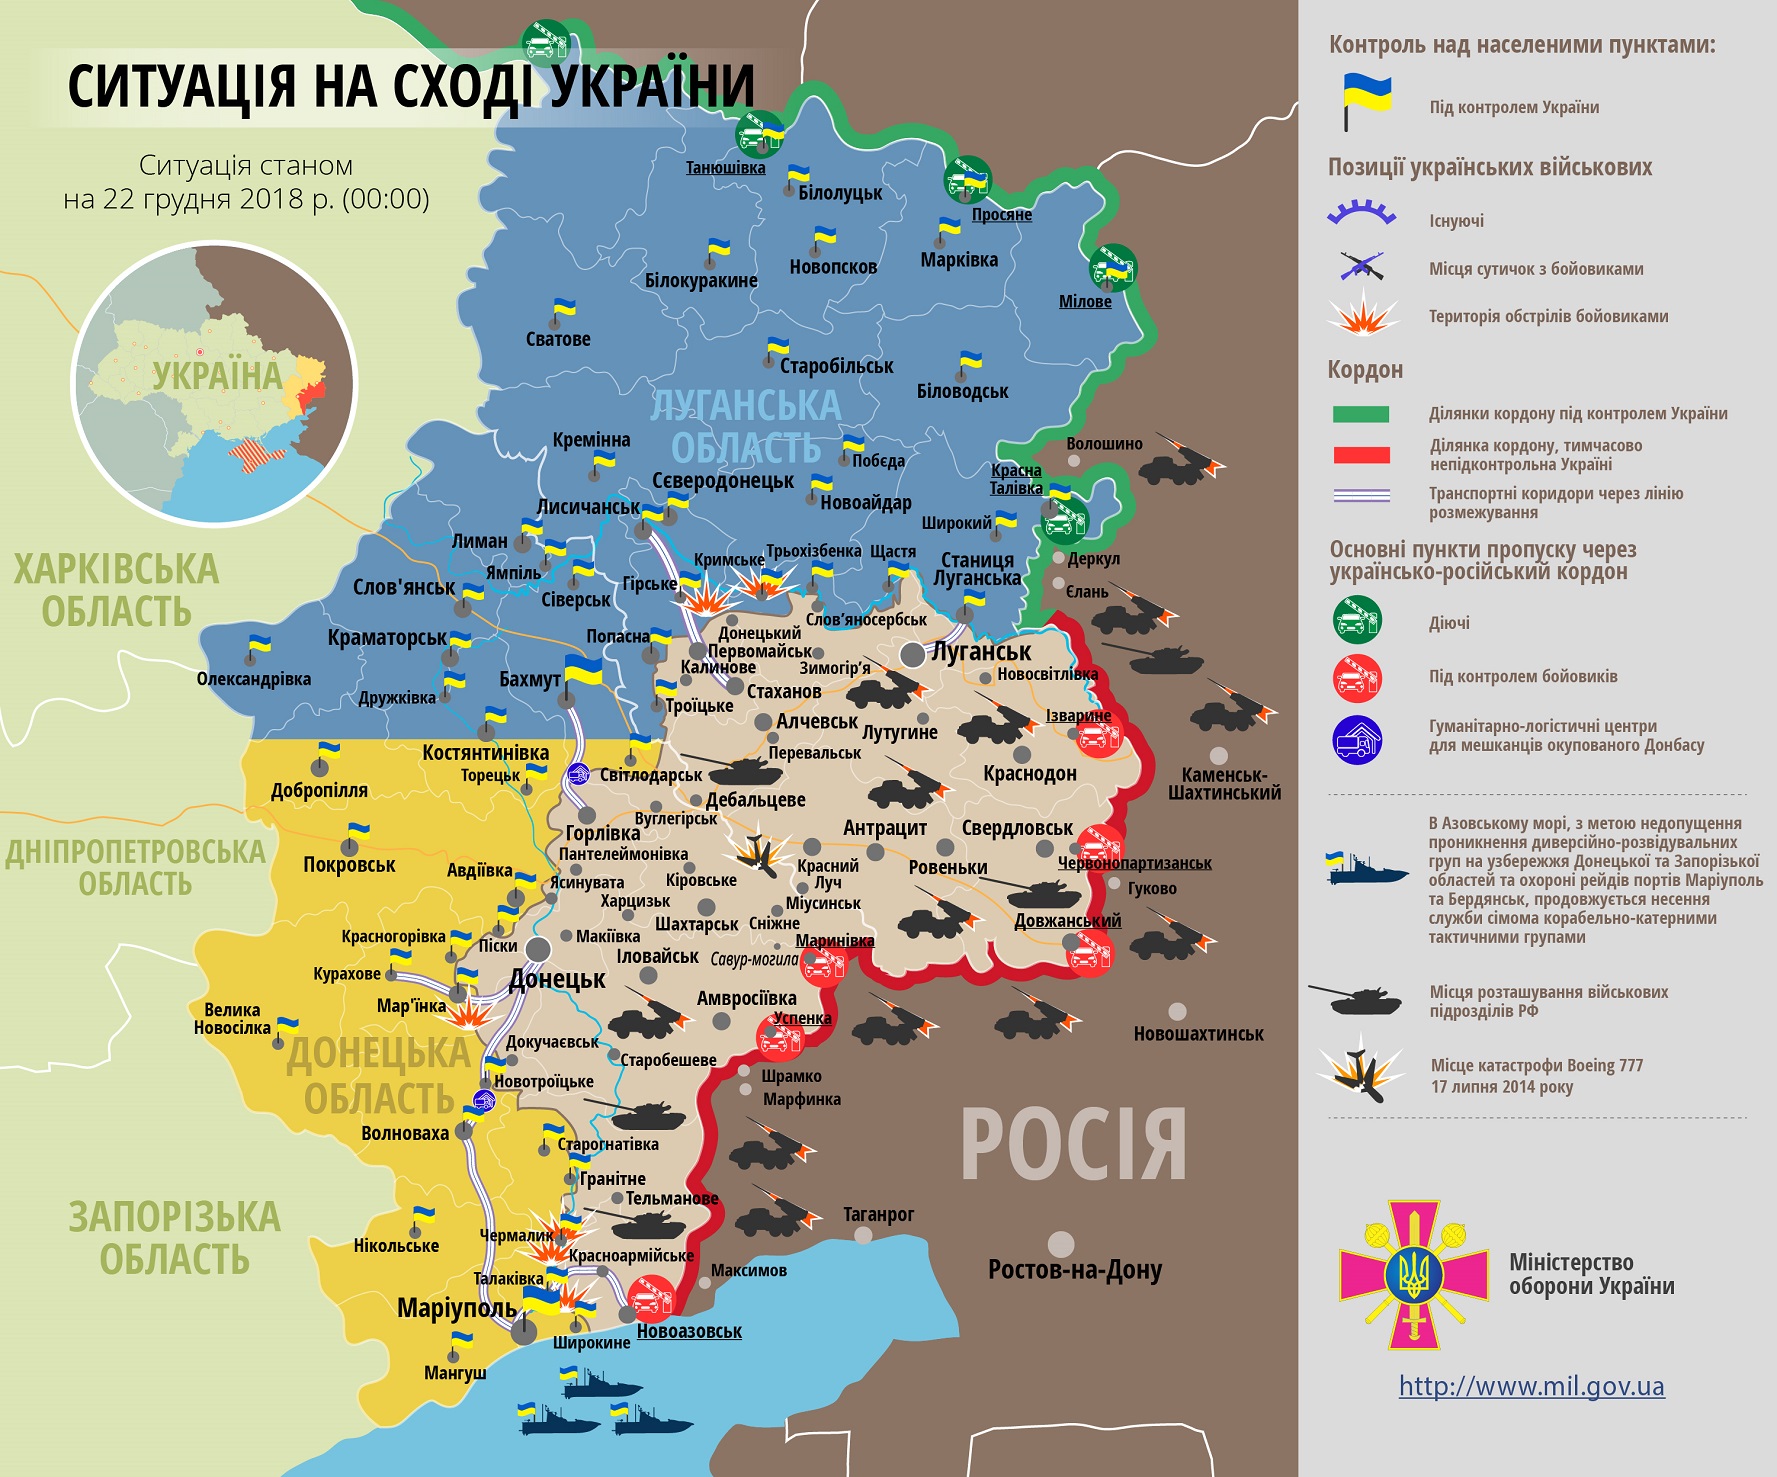 ВСУ разгромили боевиков на Донбассе, у армии РФ опять убитые: боевая сводка и карта ООС за 22 декабря